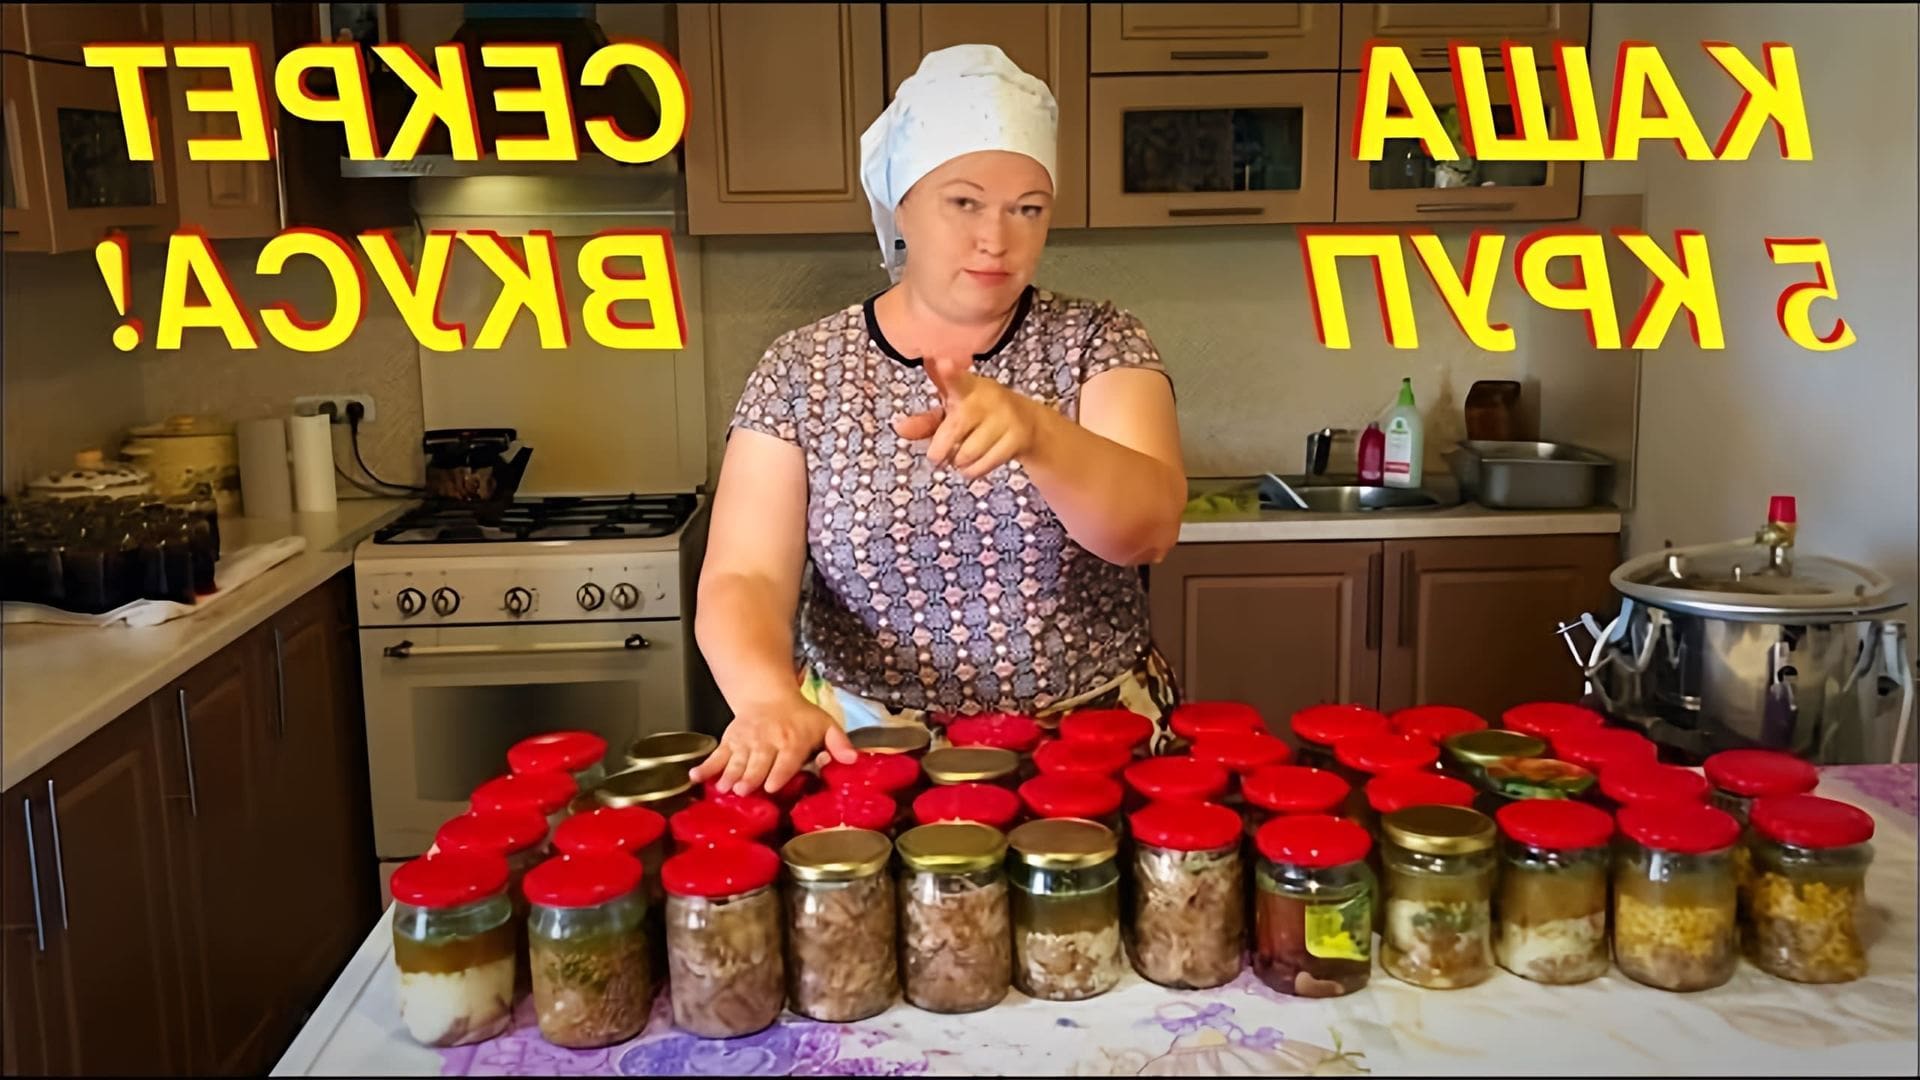 В этом видео автор делится своим опытом приготовления каши в автоклаве